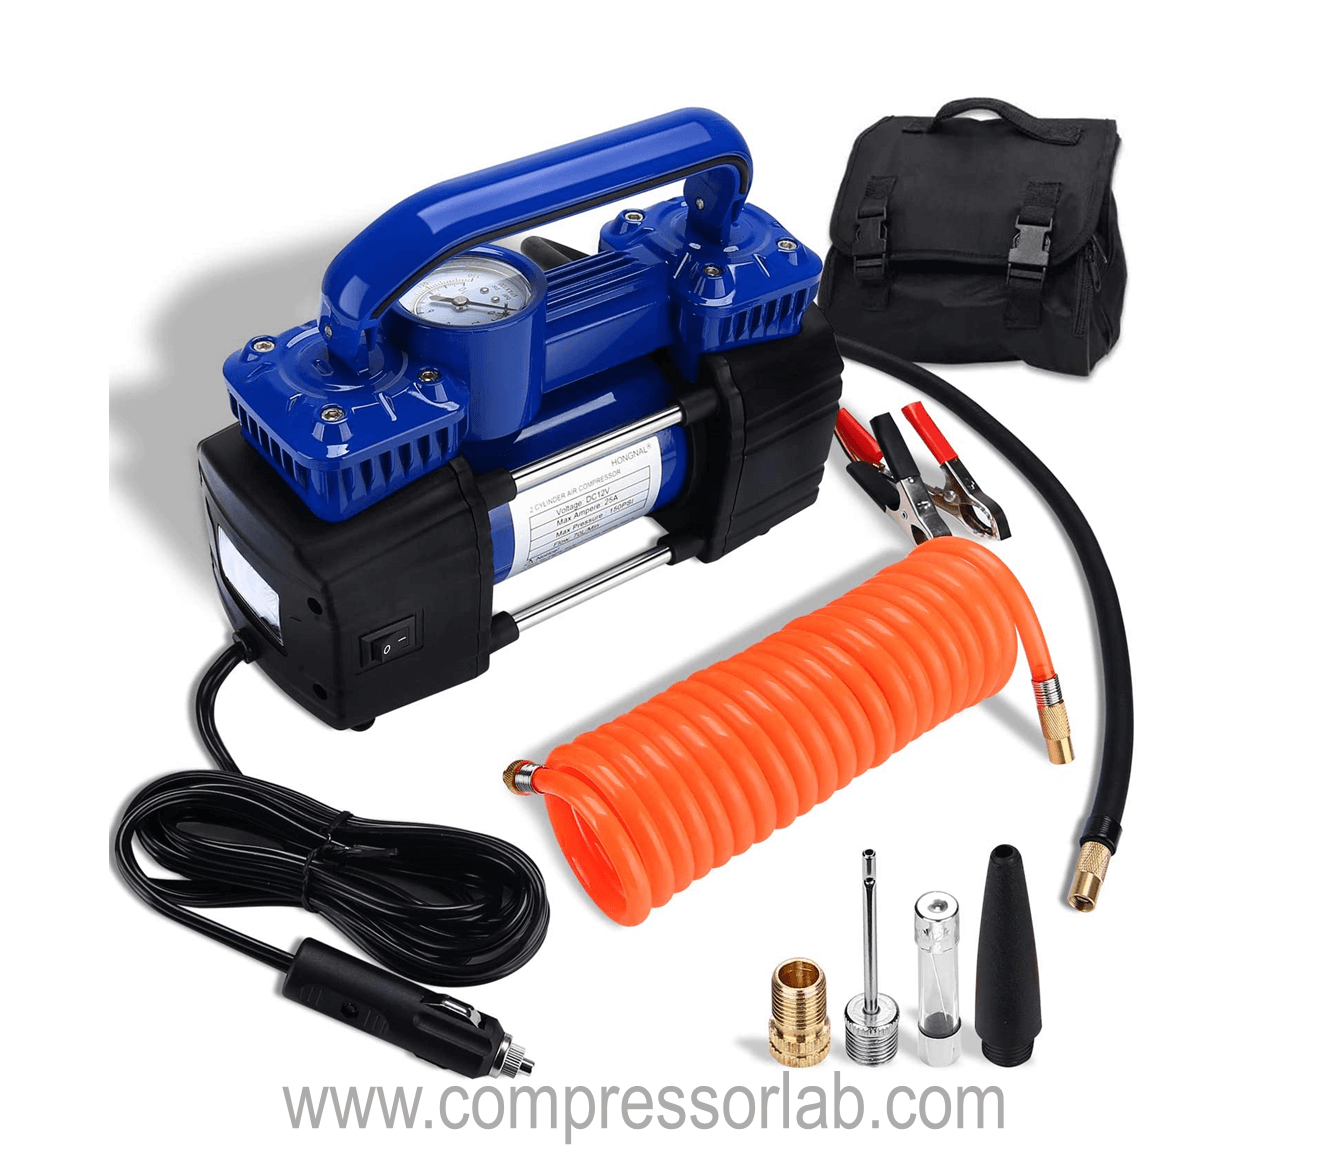 HONGNAL Portable Air Compressor